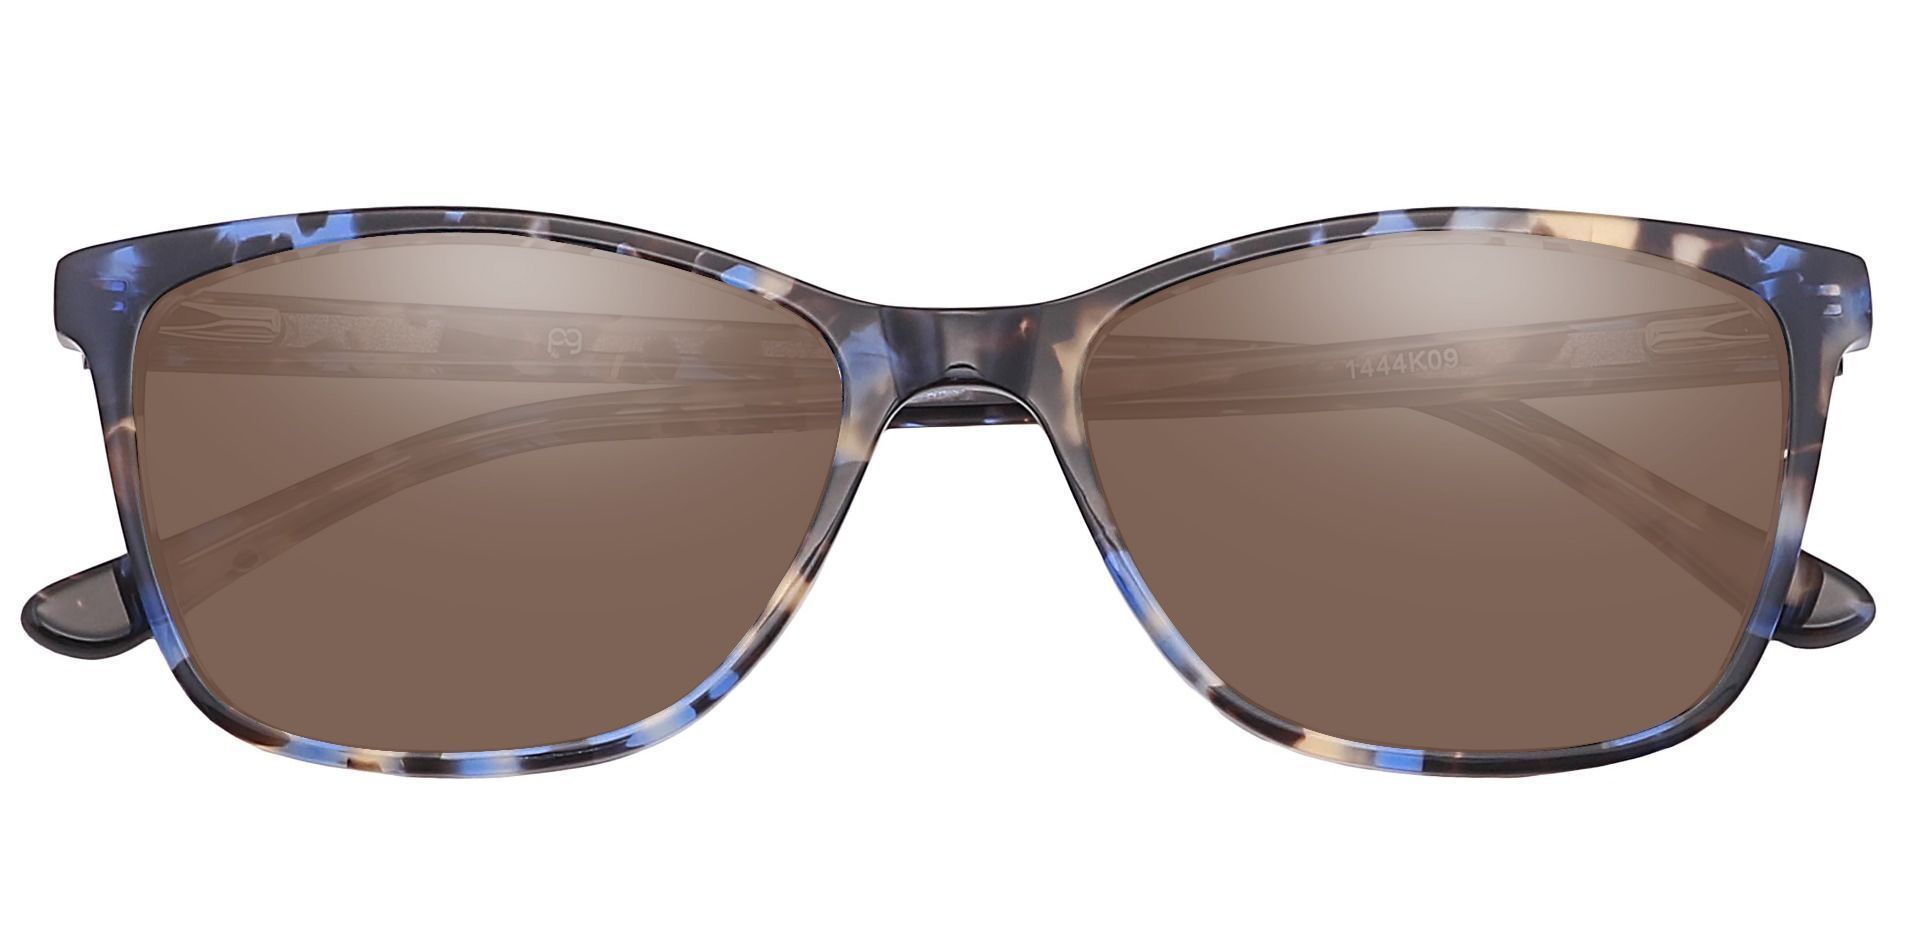 Antonia Square Progressive Sunglasses - Multi Color Frame With Brown Lenses